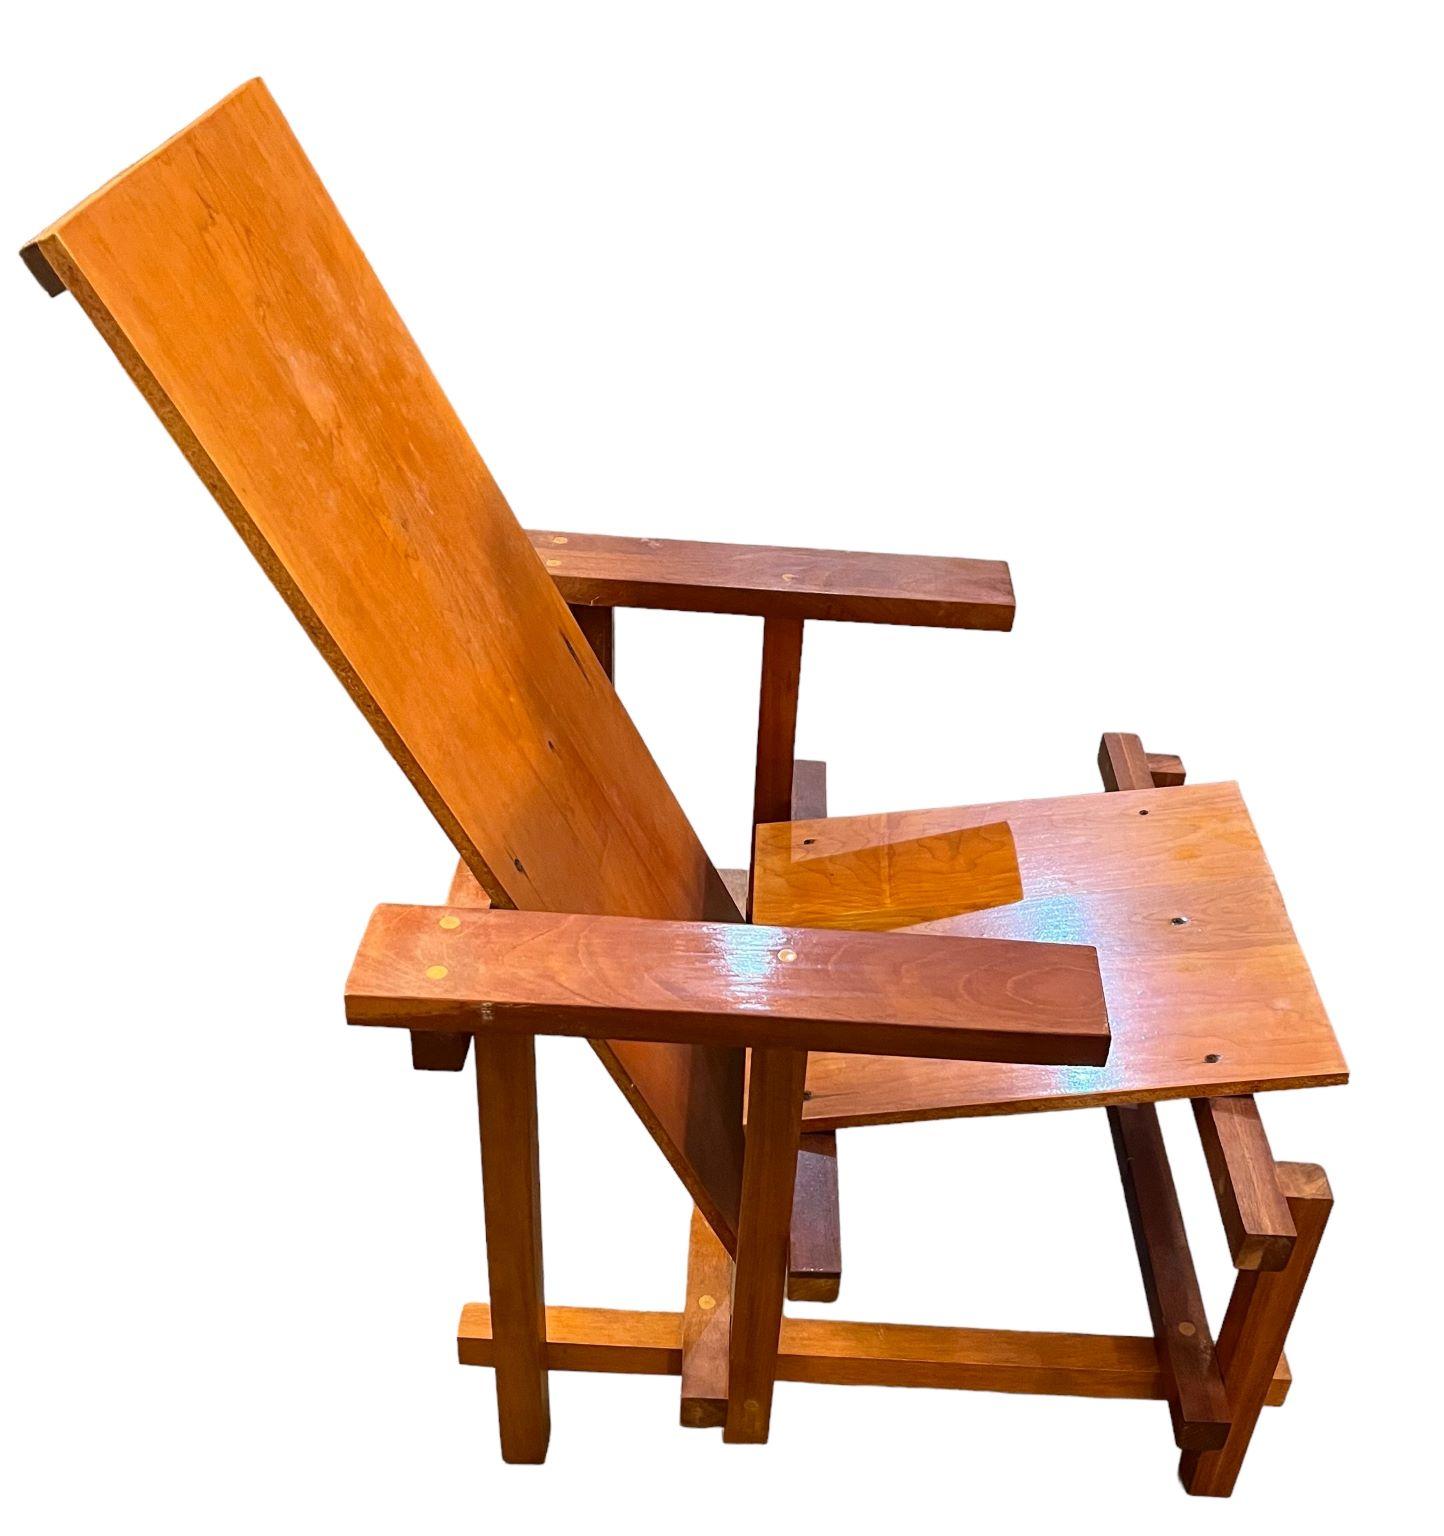 Ikonischer Stuhl im Stil des niederländischen Künstlers Gerrit Rietveld. Der Stuhl ist aus Ahornfurnier und massivem Mahagoni gefertigt. Der Hersteller ist nicht bekannt, aber alle Verbindungen und die gesamte Handwerkskunst sehen sehr professionell